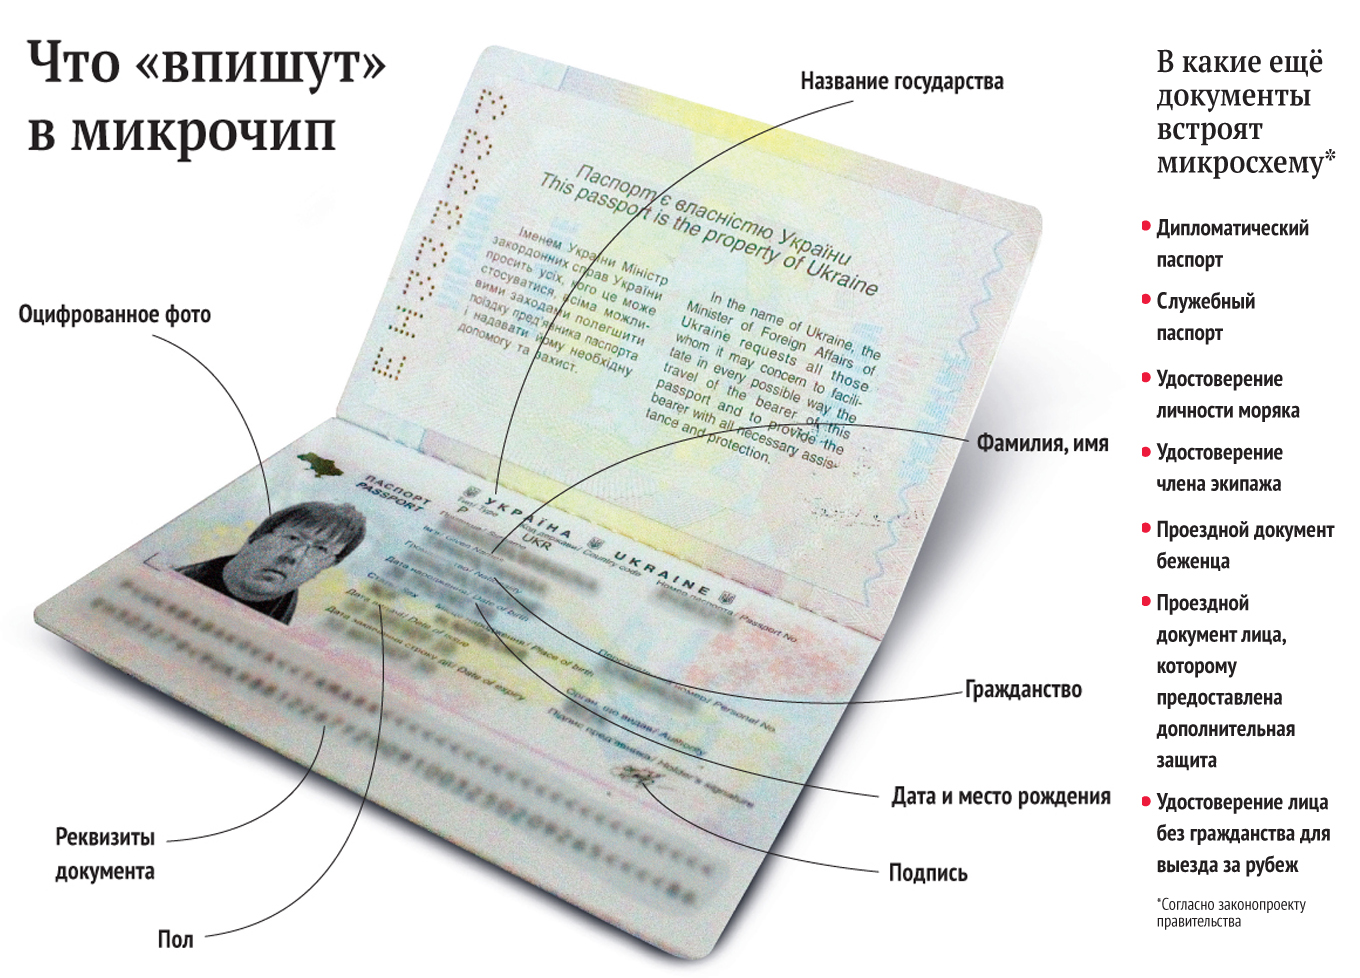 Биометрический паспорт Украины номер